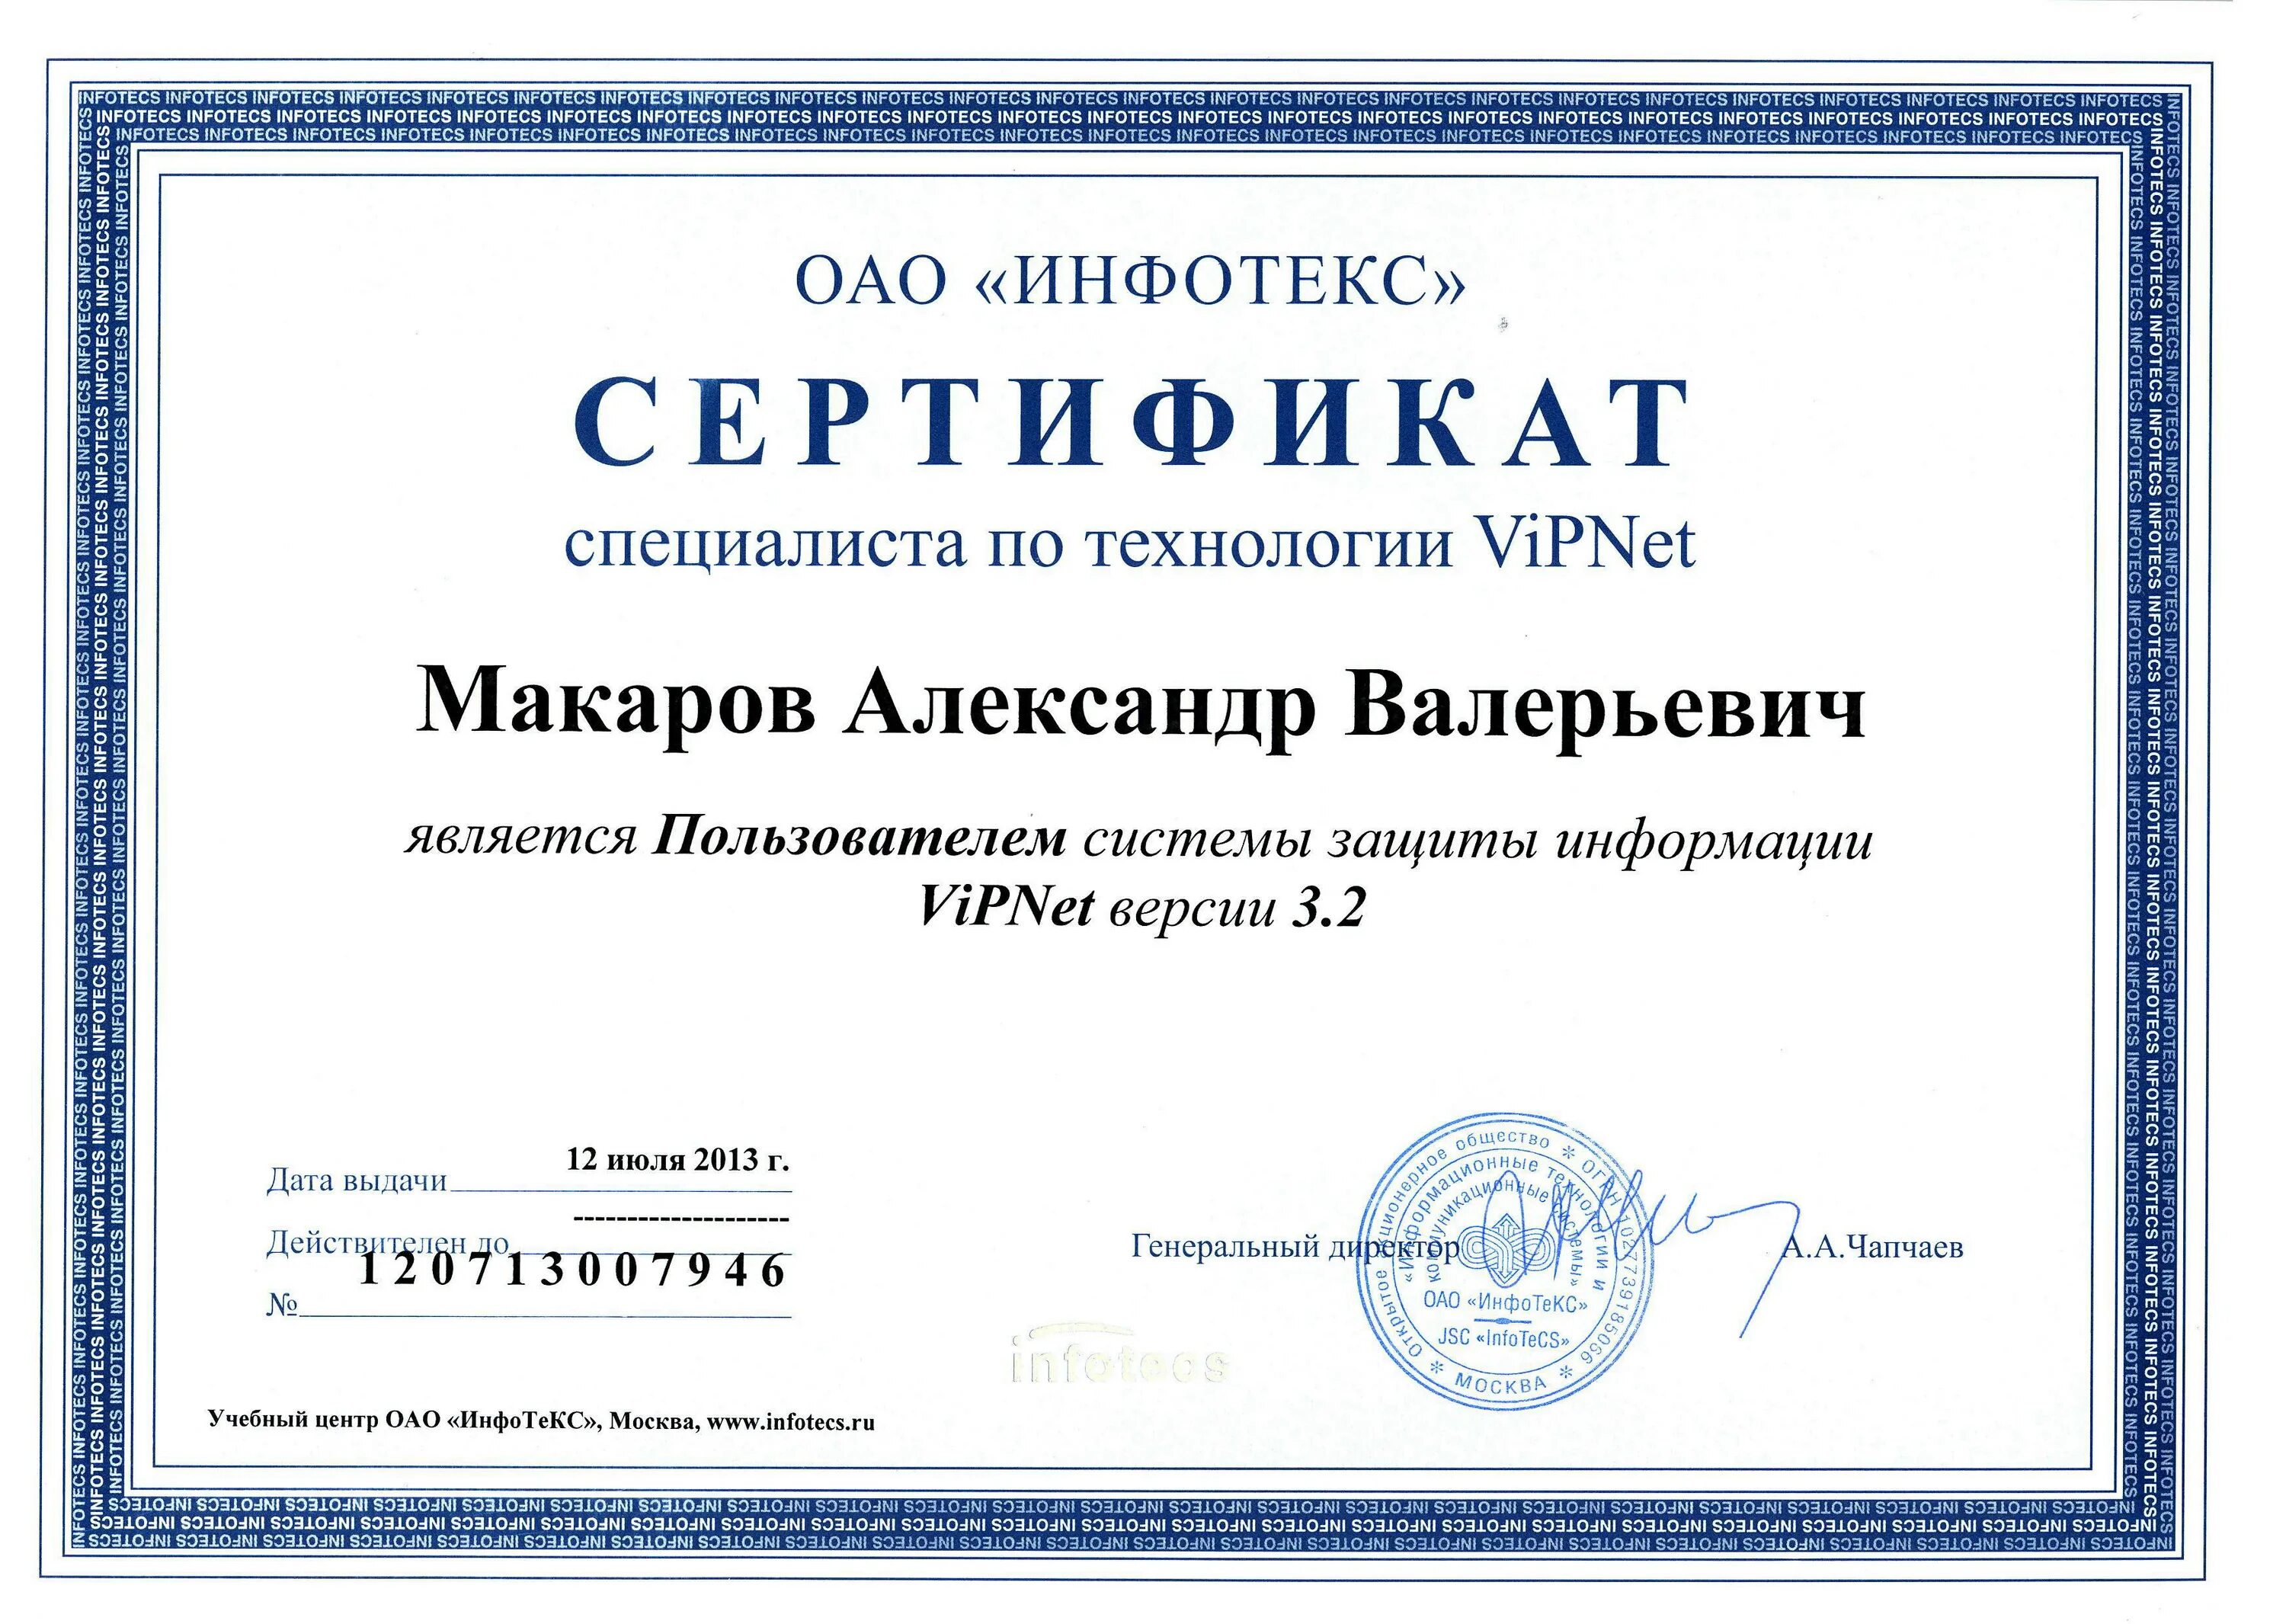 Сертификатом безопасности является. Сертификат VIPNET. Сертификат по информационной безопасности. Сертификат специалиста VIPNET. Международные сертификаты информационной безопасности.